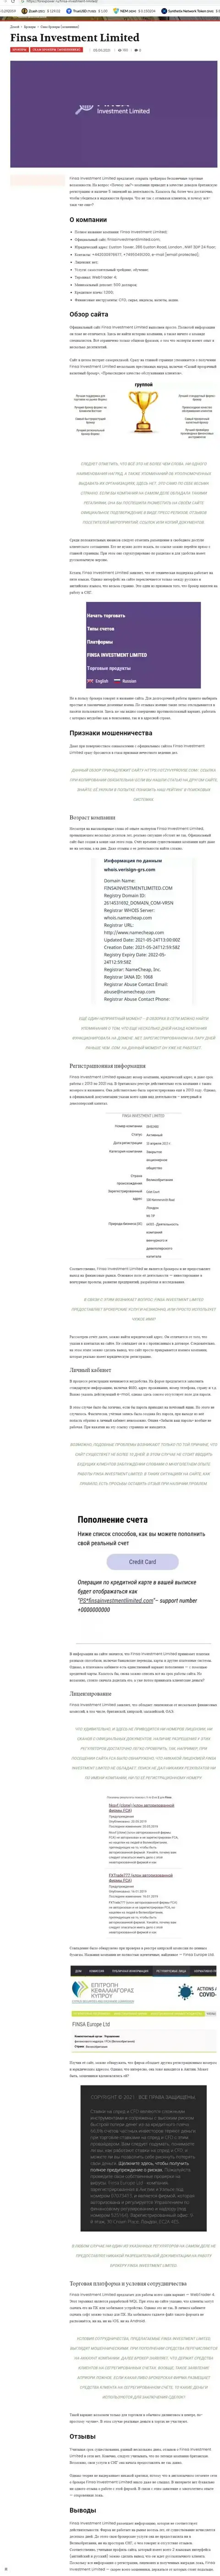 FinsaInvestmentLimited - это ЛОХОТРОНЩИК !!! Рассуждения и подтверждения противозаконных действий в обзорной статье